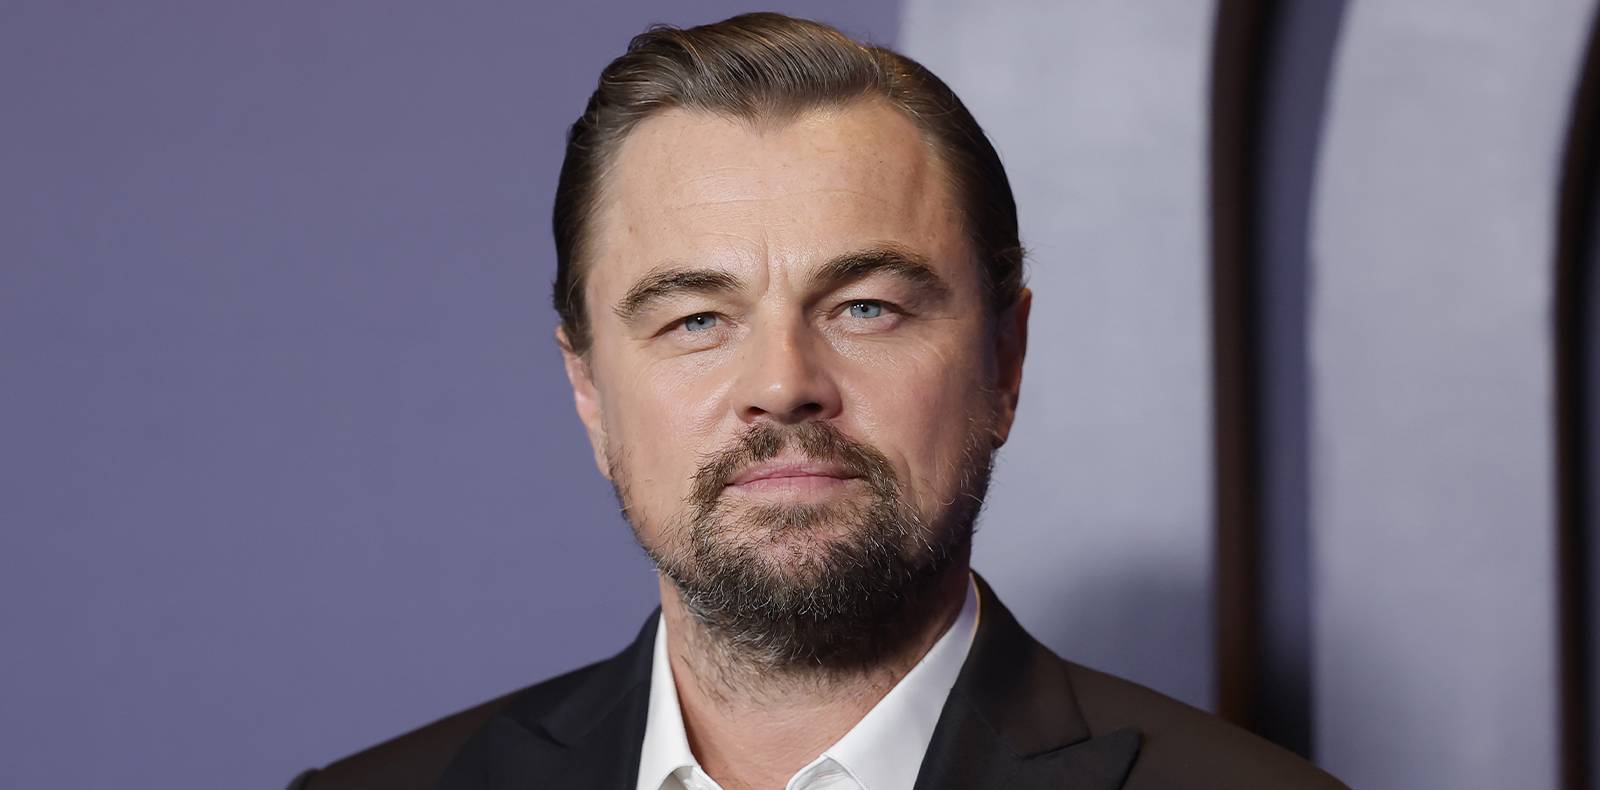 Leonardo DiCaprio, Martin Scorsese, Biopic, Frank Sinatra, Jennifer Lawrence